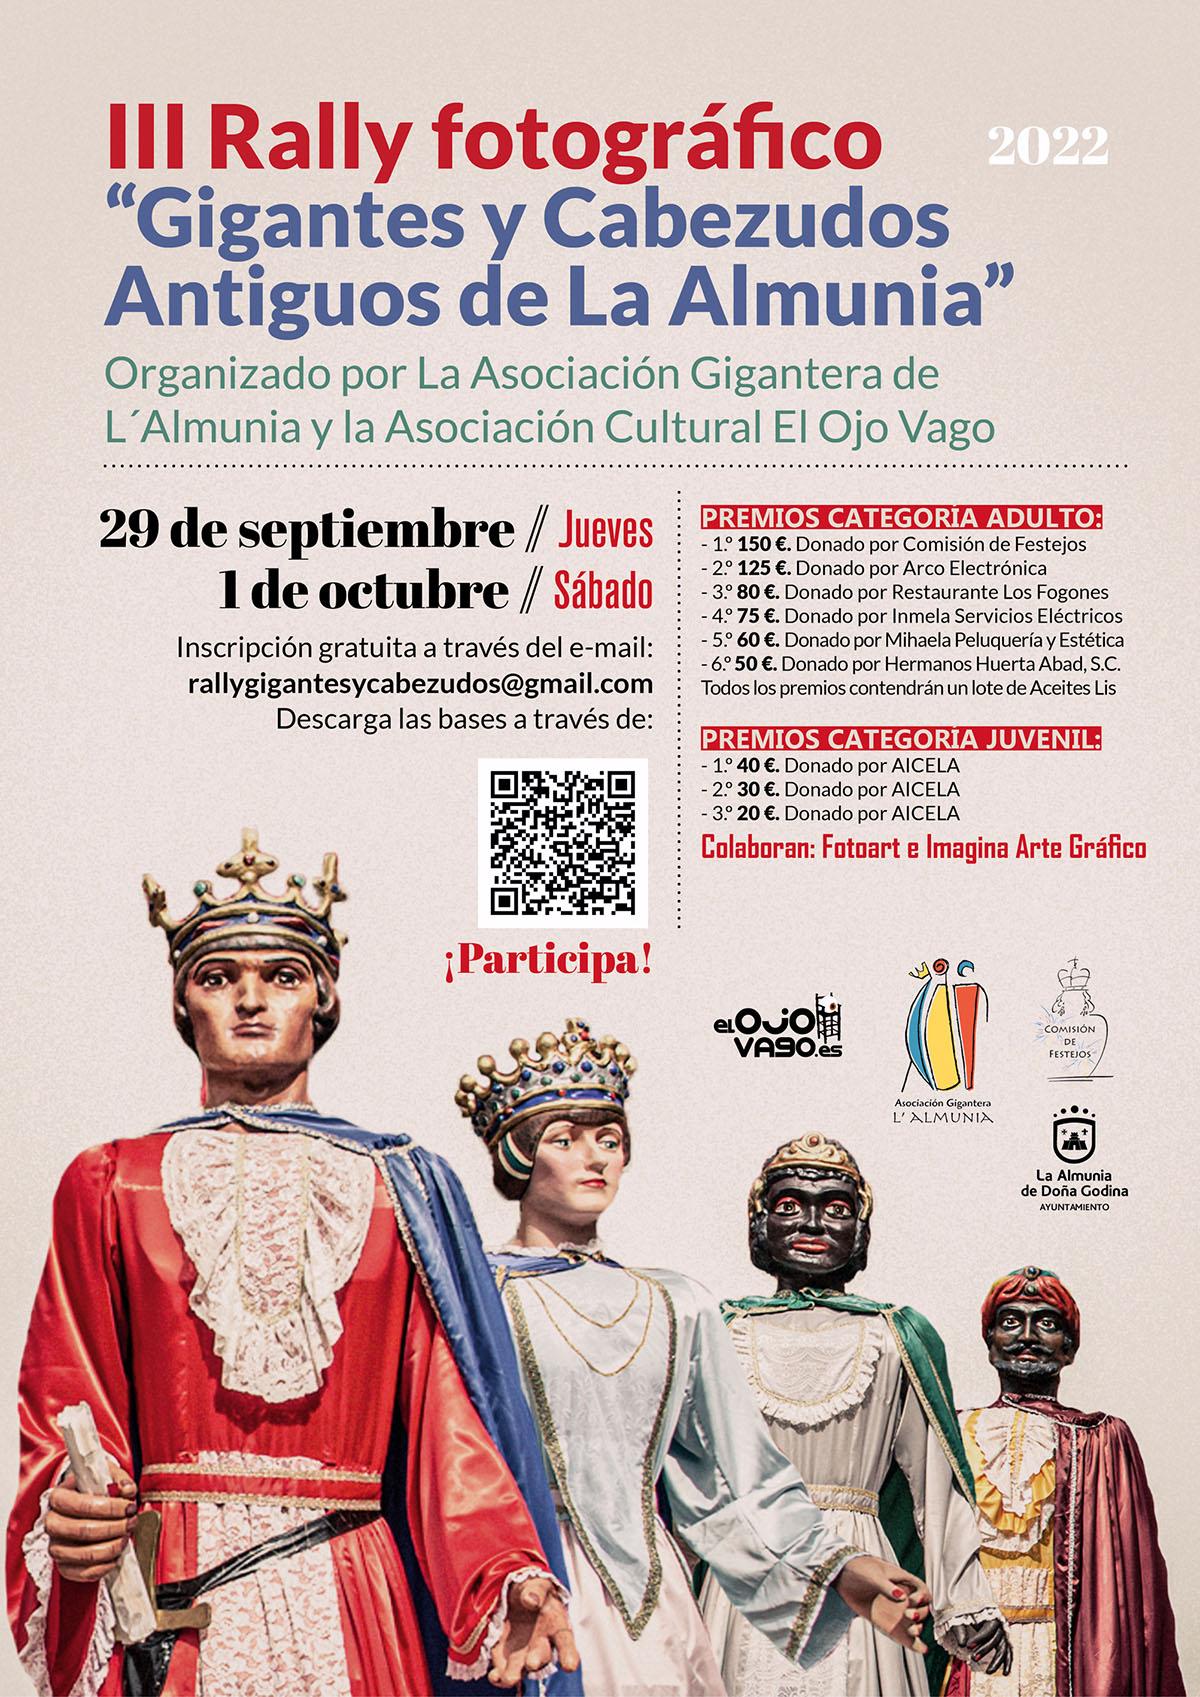 Cartel III Rally fotográfico "Gigantes y Cabezudos Antiguos de La Almunia" - Imagina Arte Gráfico